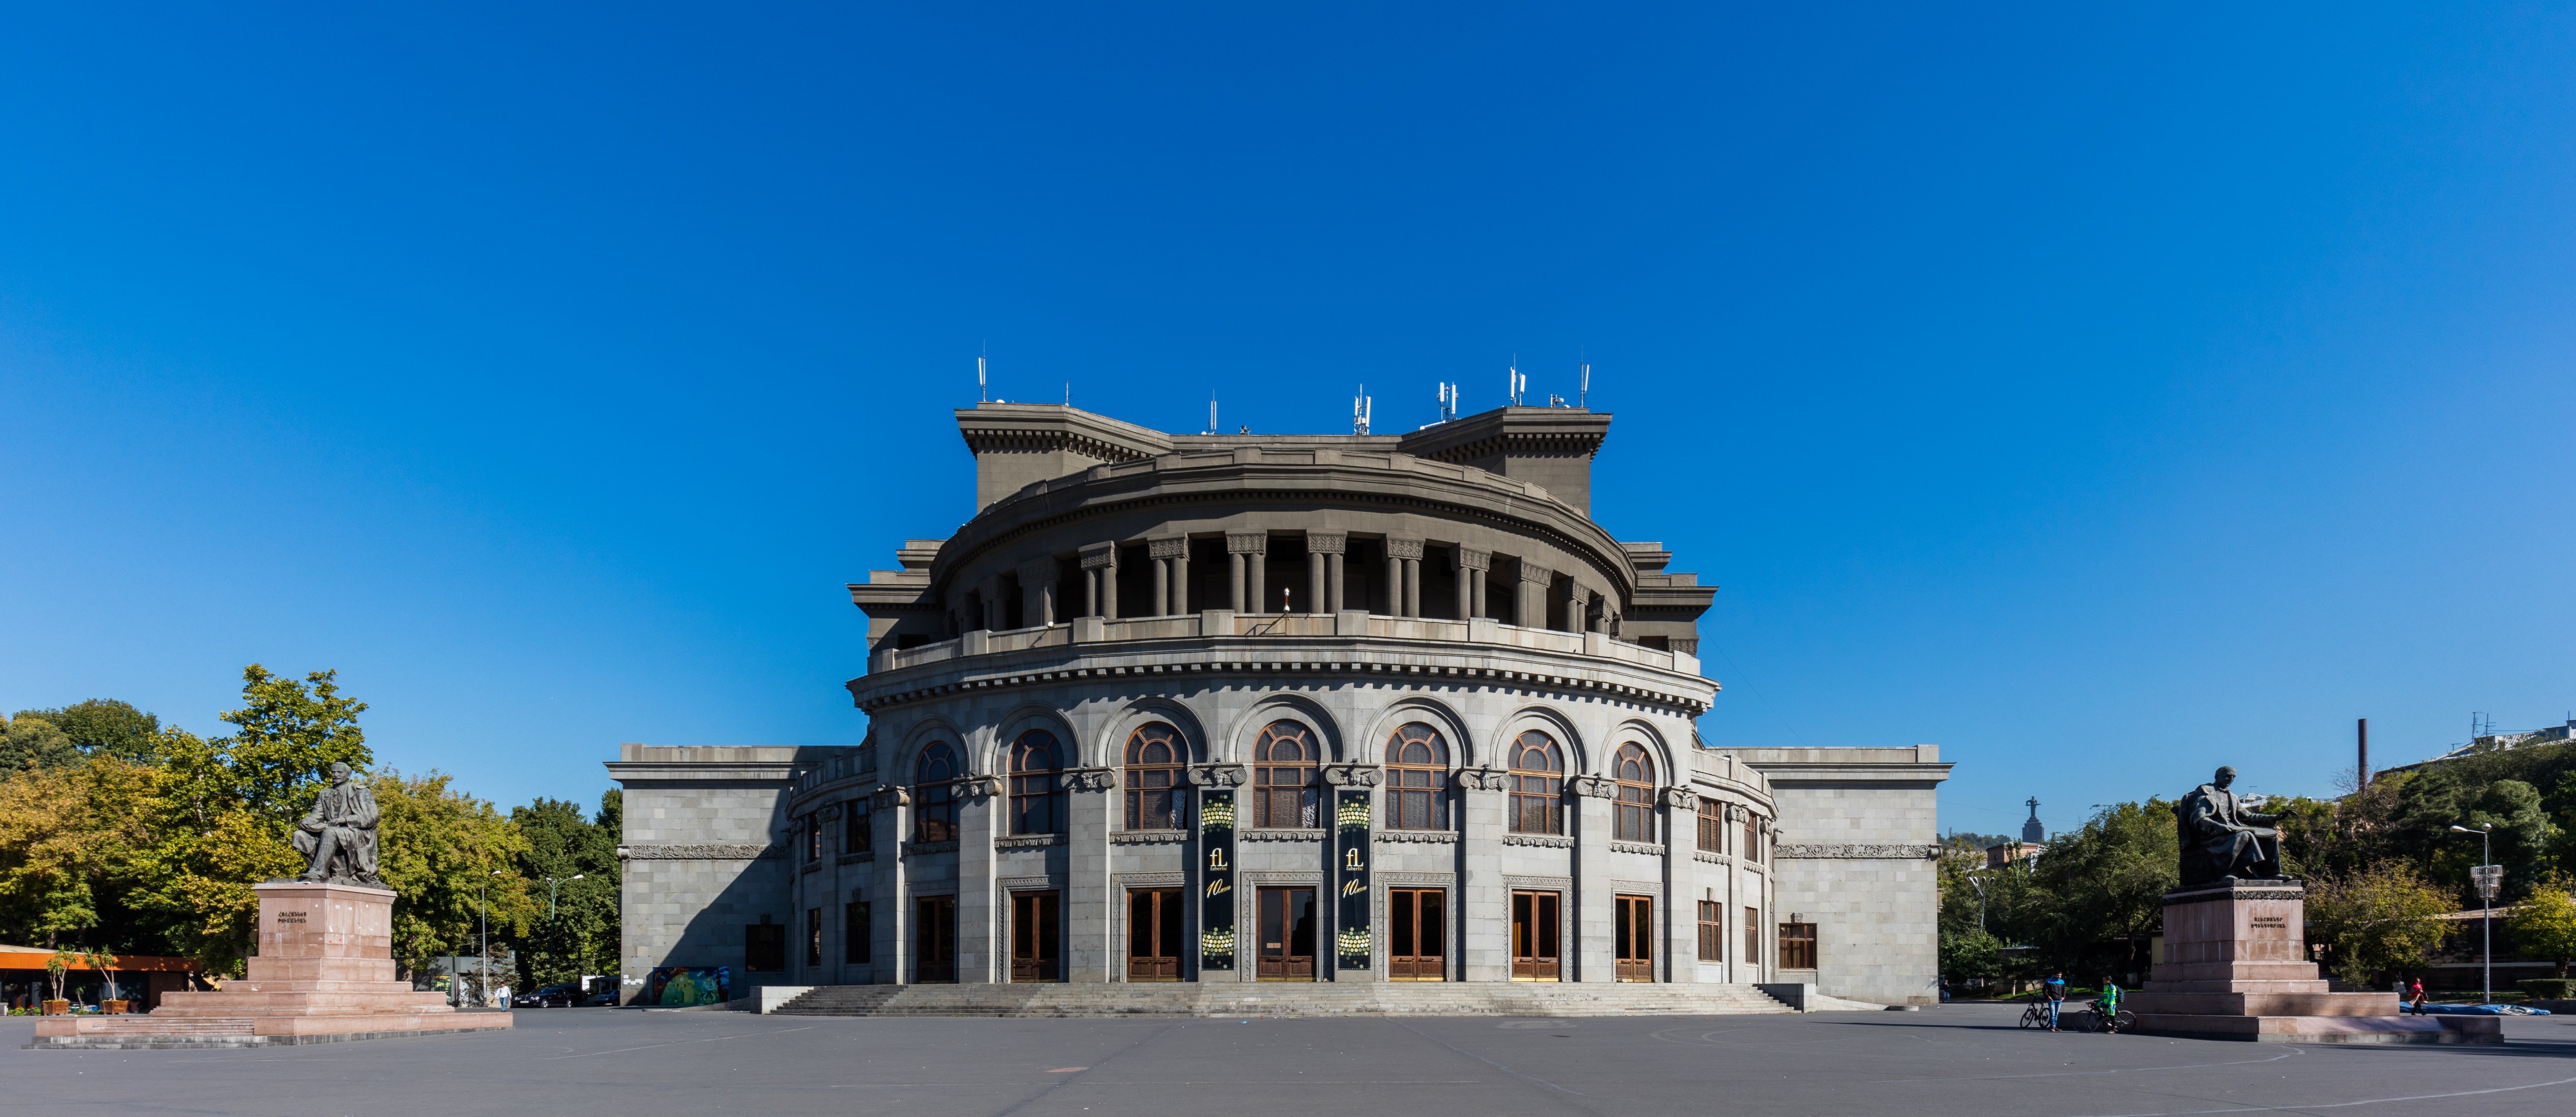 Ópera, Ereván, Armenia, 2016-10-03, DD 13